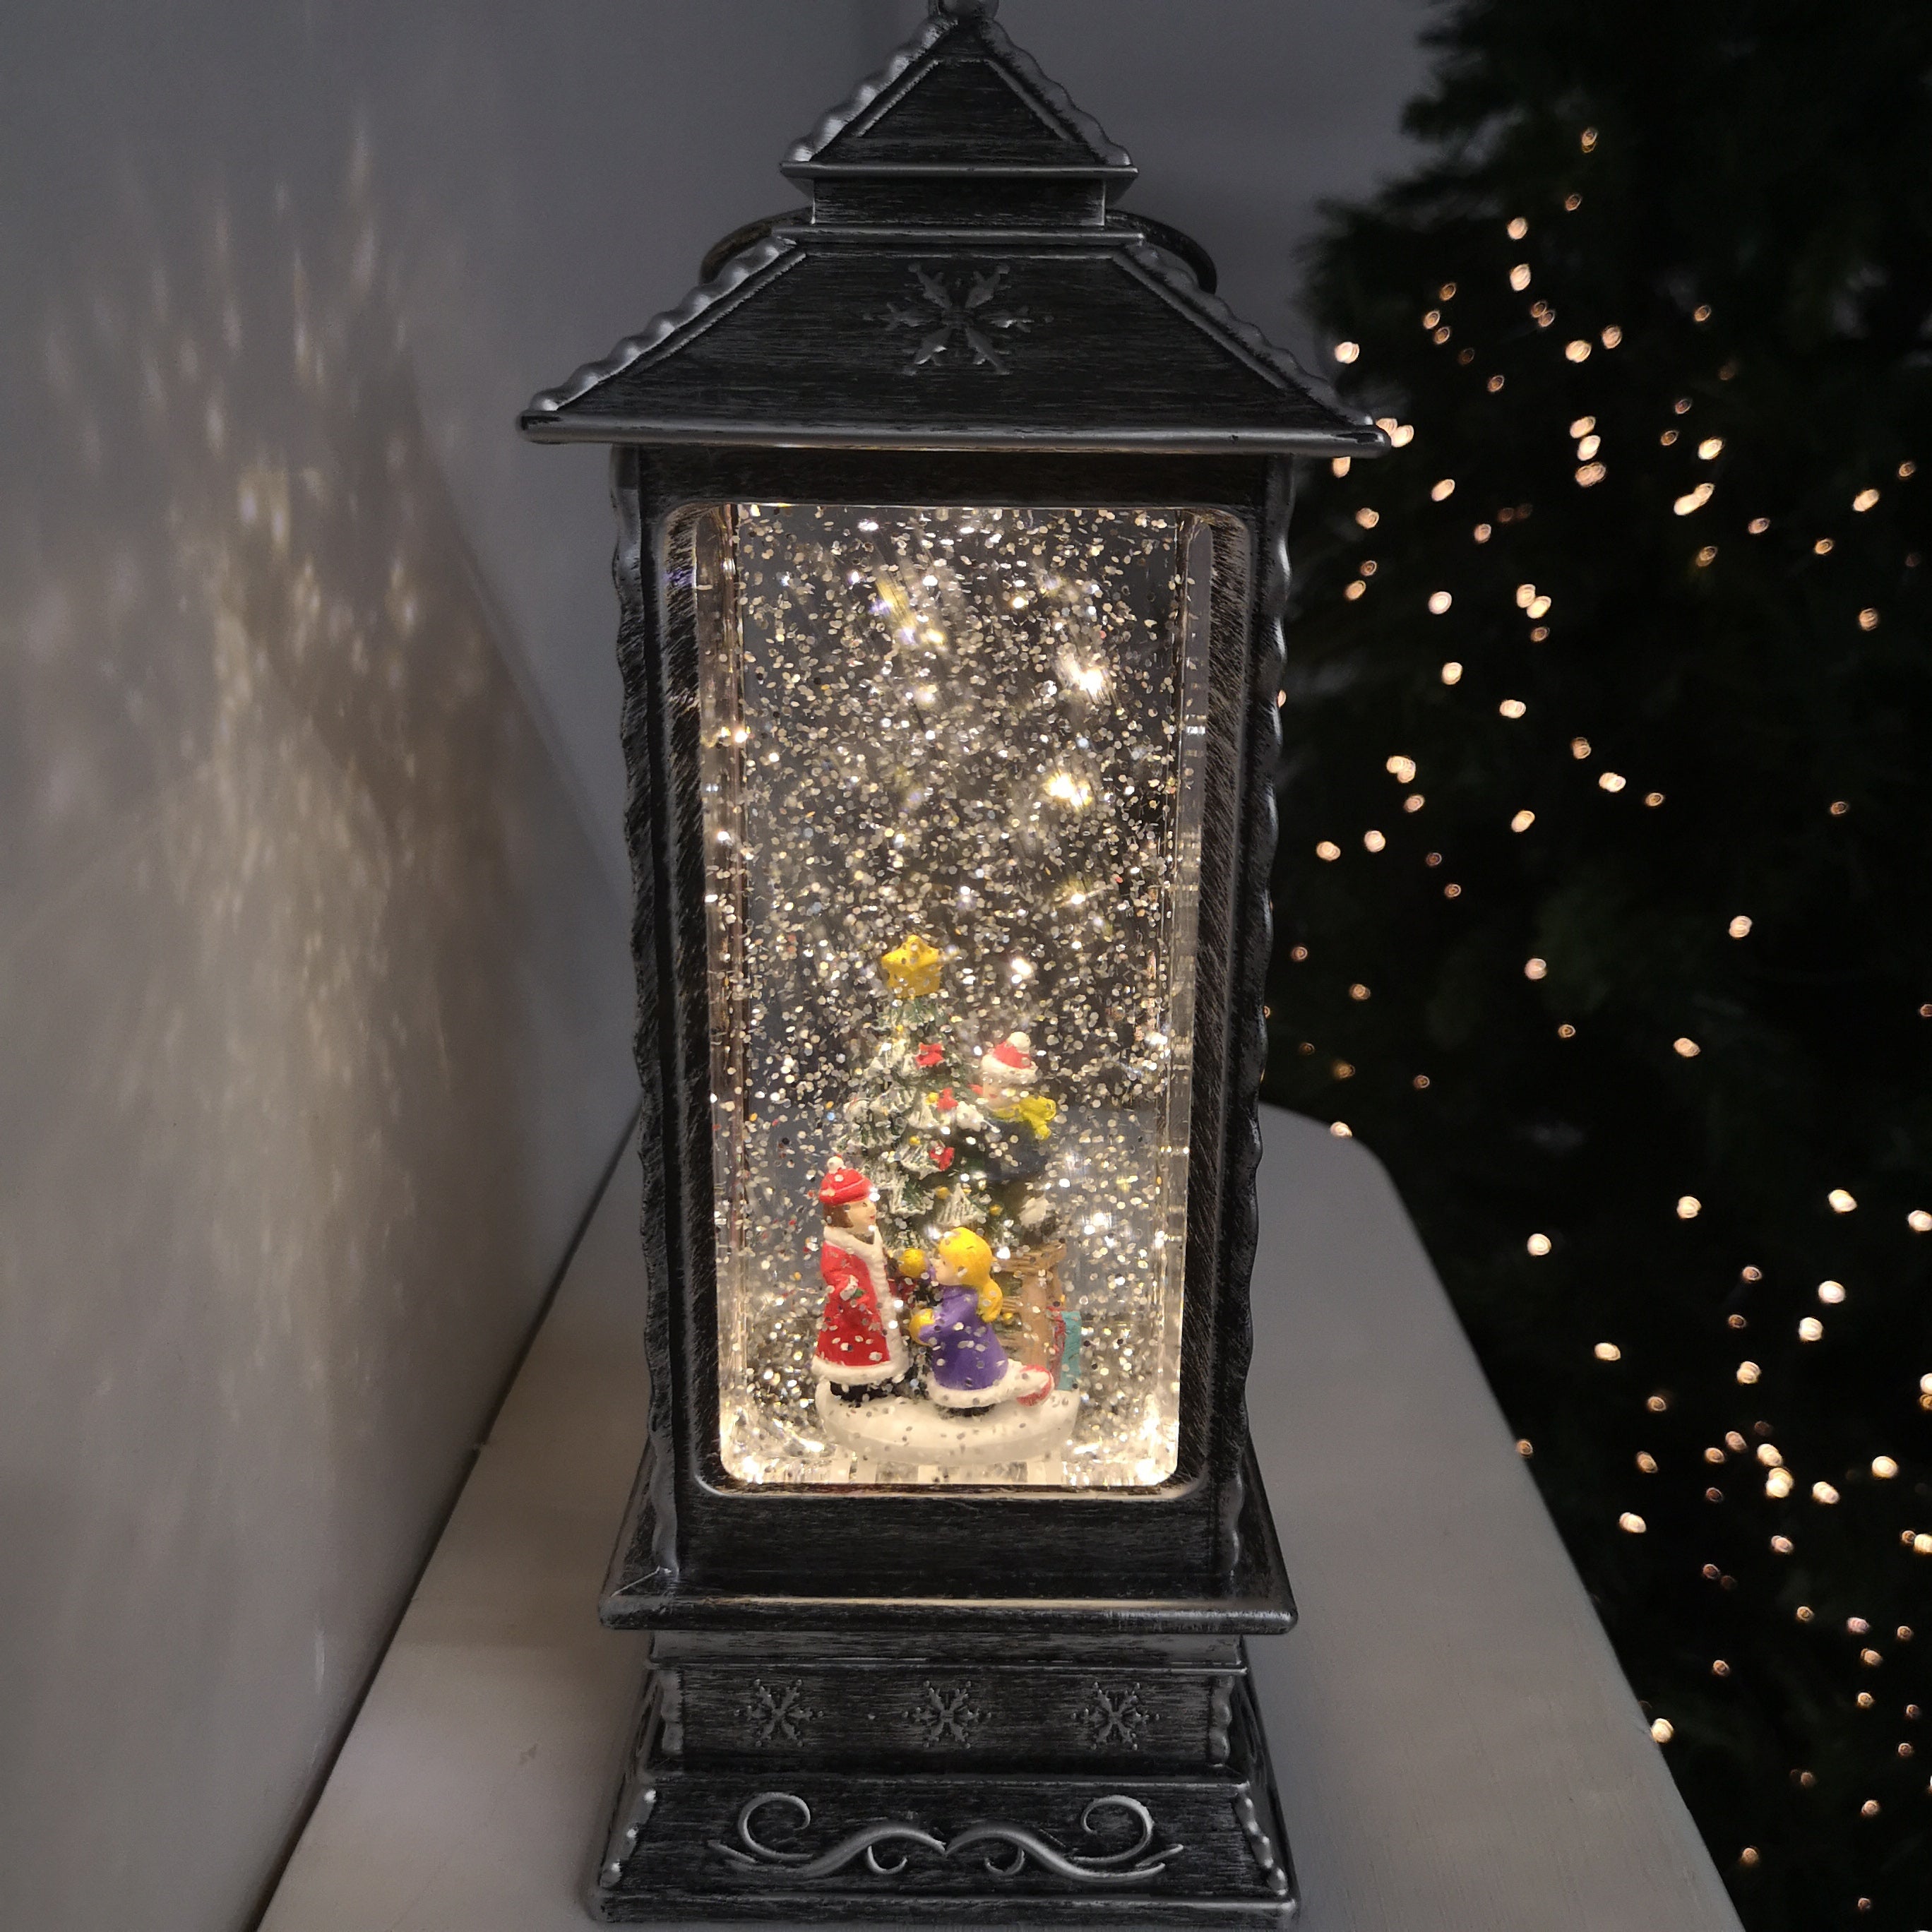 27cm Glitter Water Spinner Lantern - Pick Choir or Tree. Warm White LED